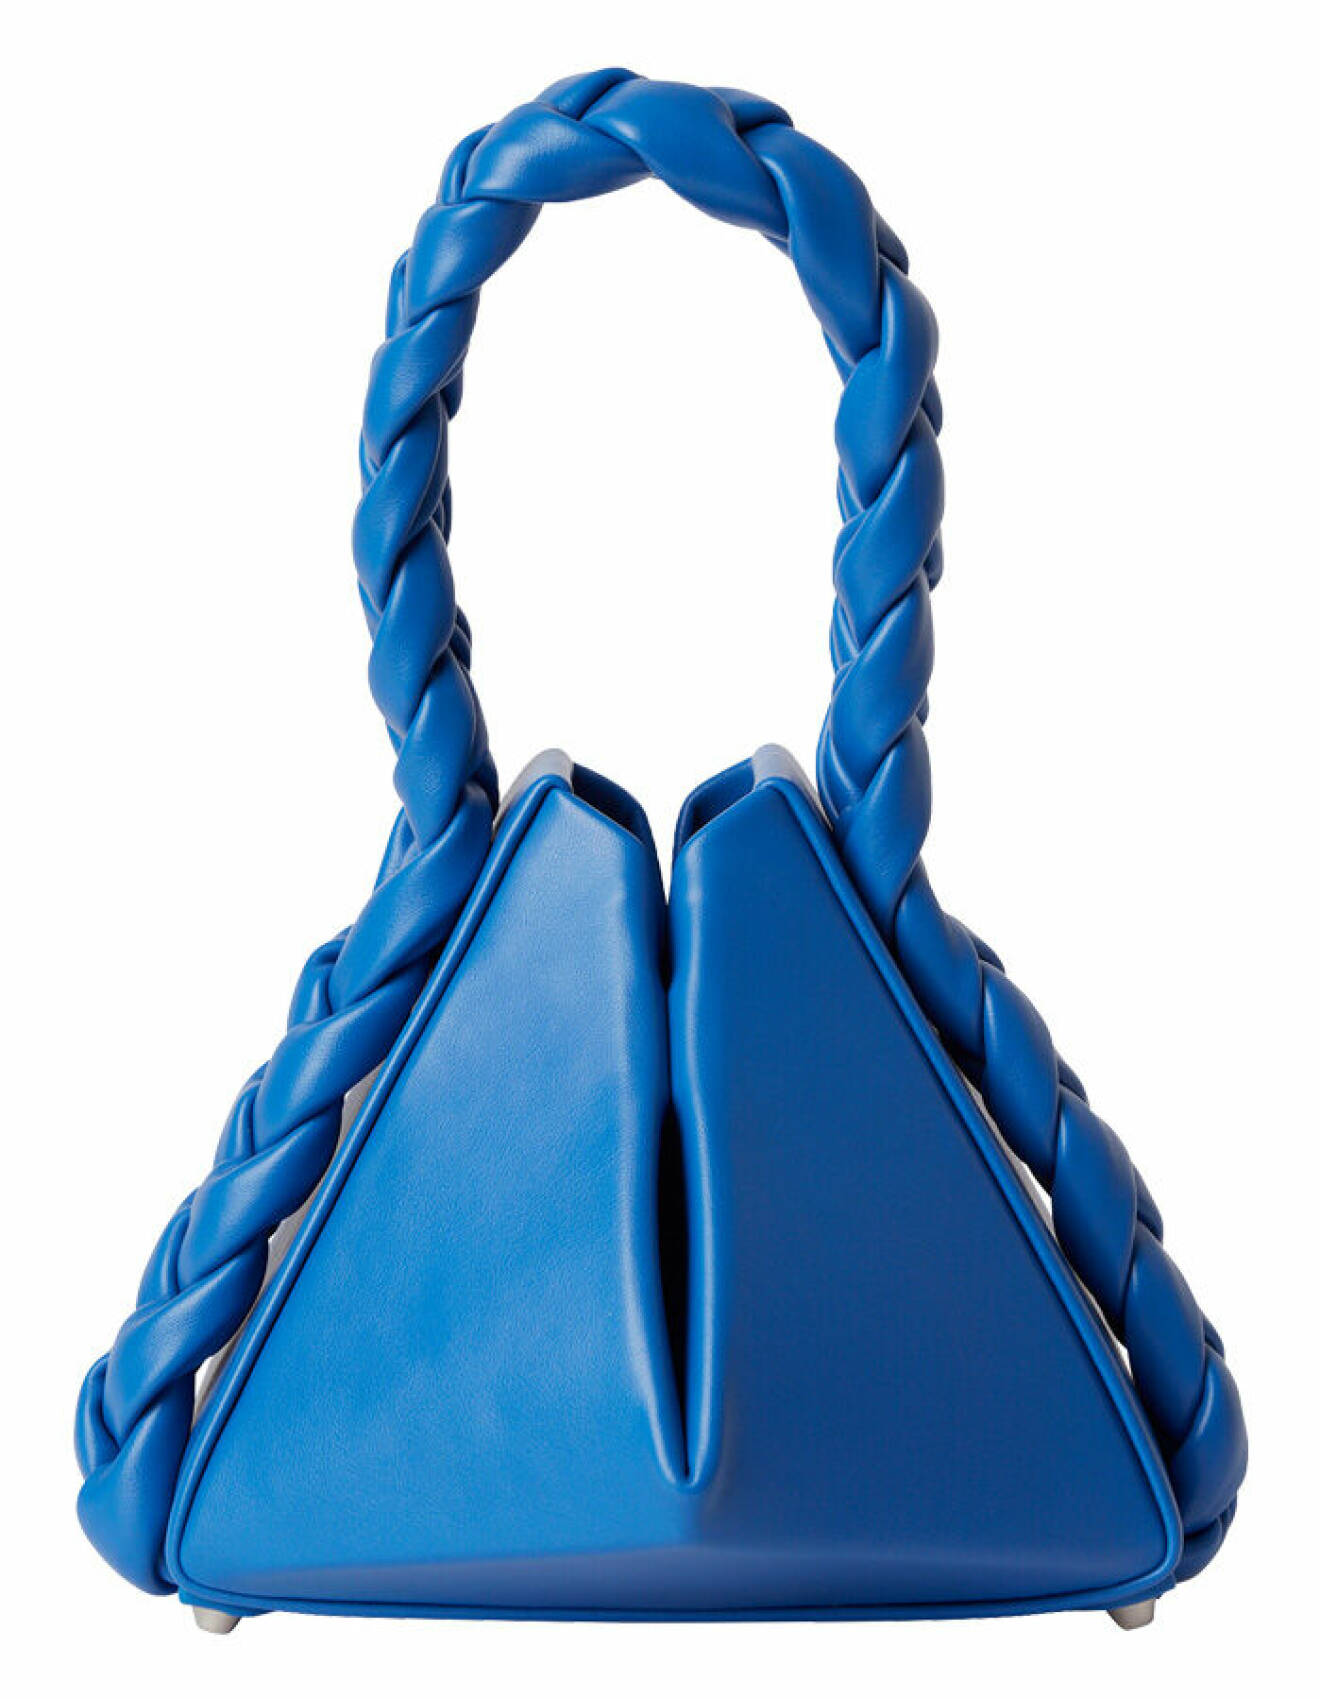 liten blå väska med flätat handtag och geometrisk design från stockh lm studio